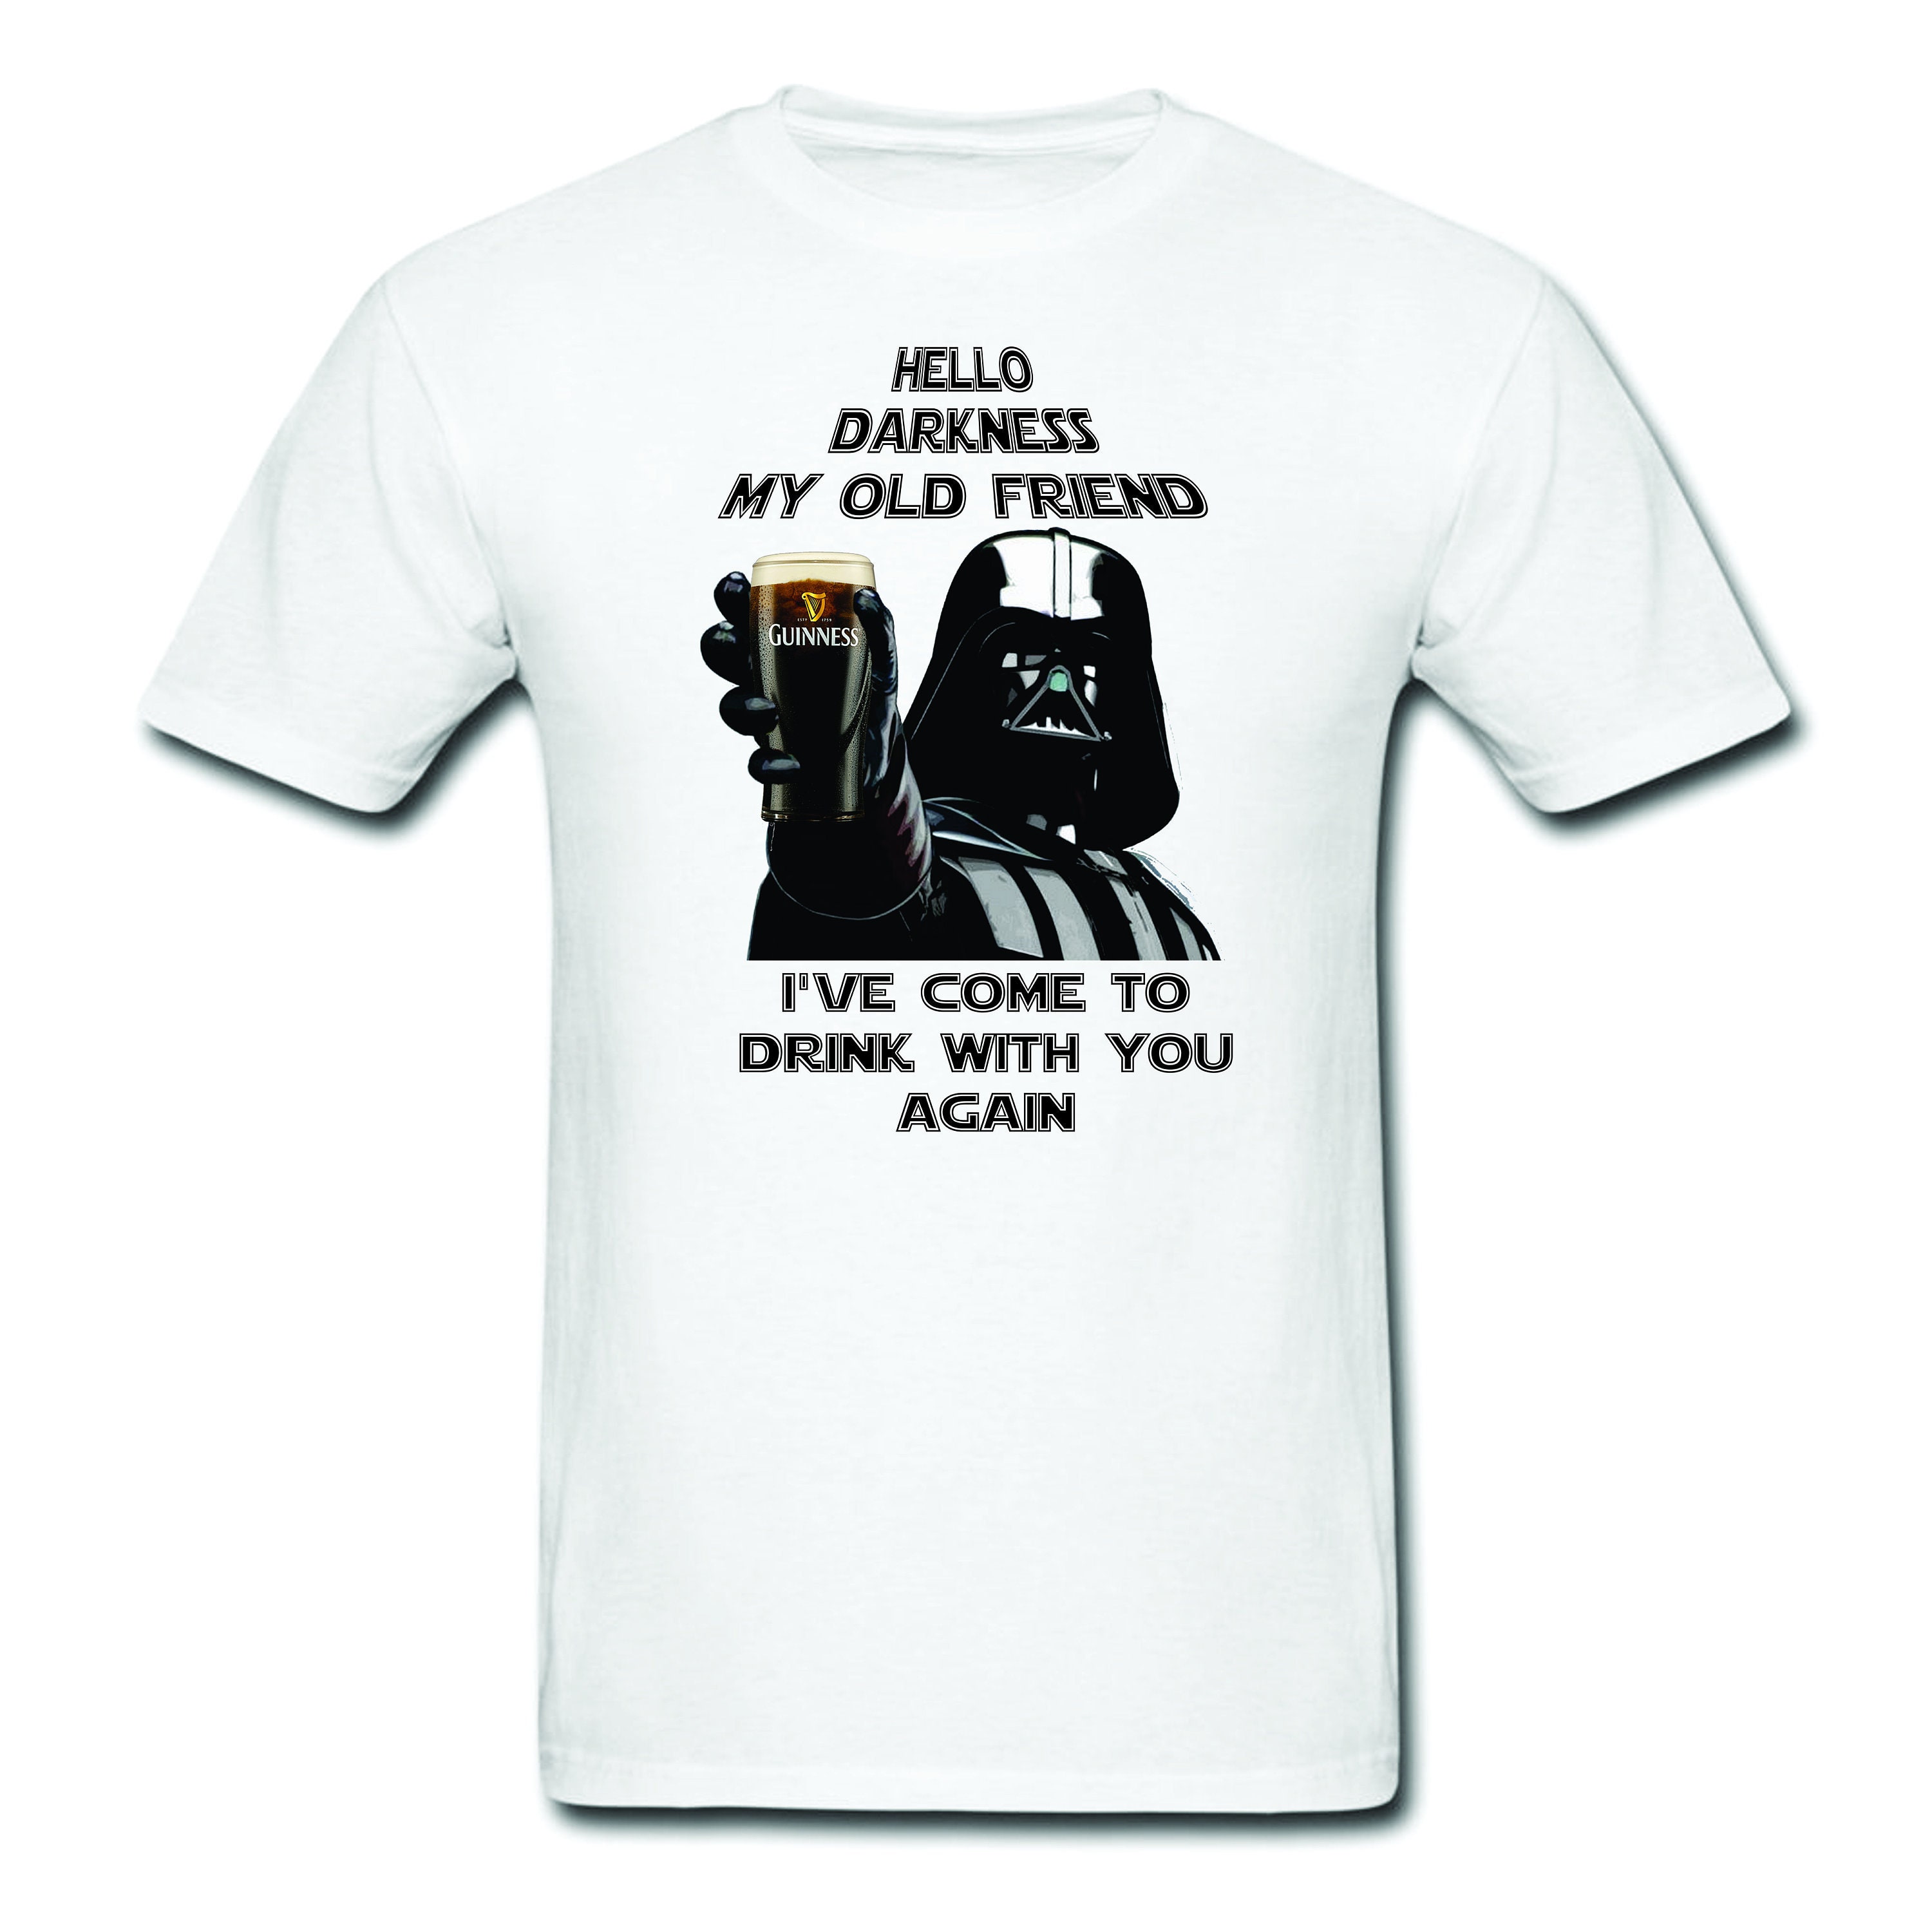 Star Wars shirt-Star Wars|Hello darkness my old friend|Star Wars gift|-Darth lovers-Anakin Skywalker-Guinness-Jameson